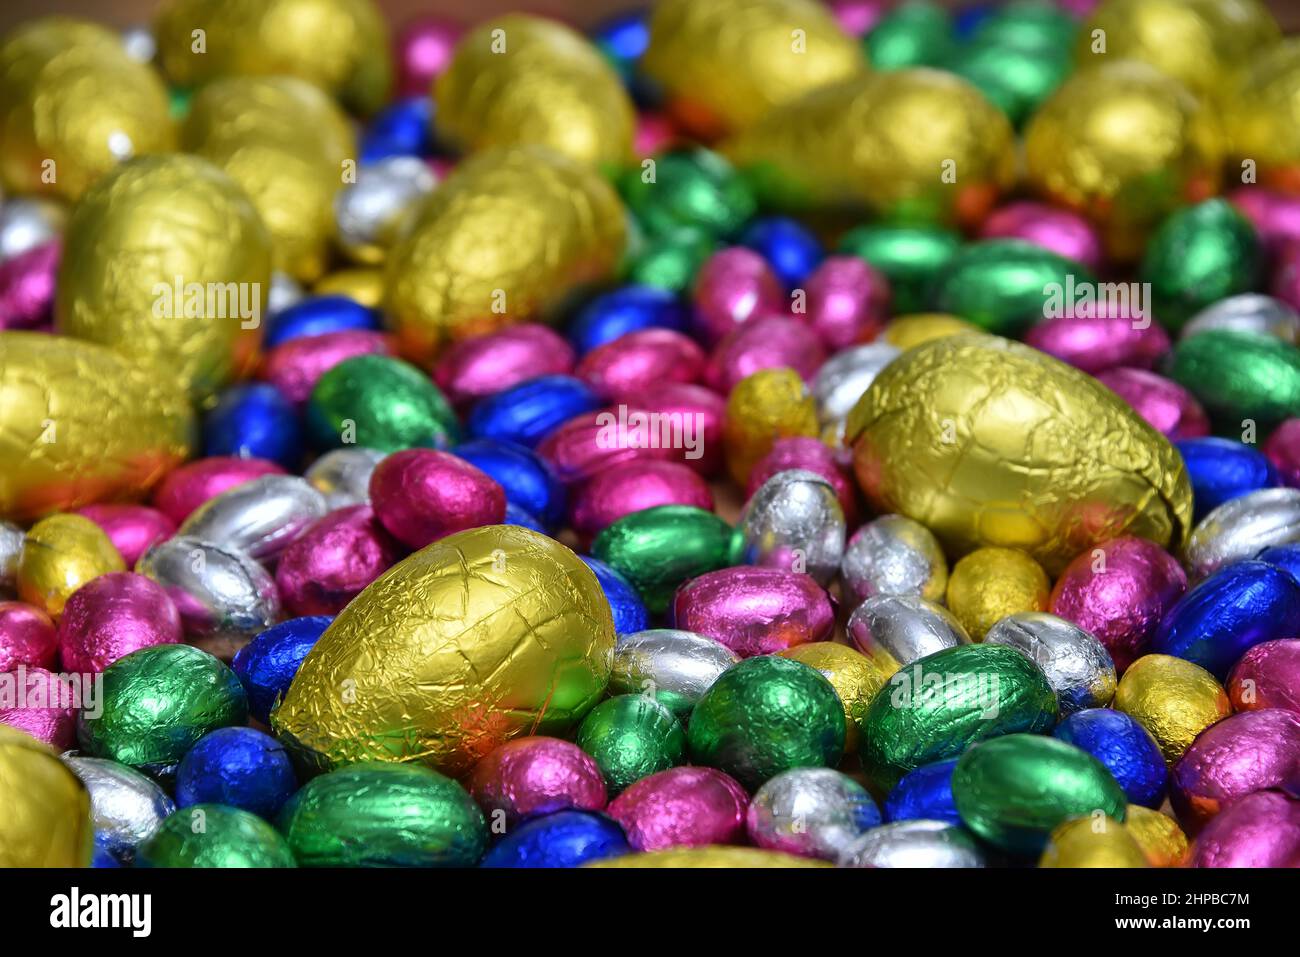 Un piccolo foglio rosa, blu, verde e argento avvolse le uova di pasqua al cioccolato con uova gialle più grandi, su un fondo di legno pallido. Foto Stock